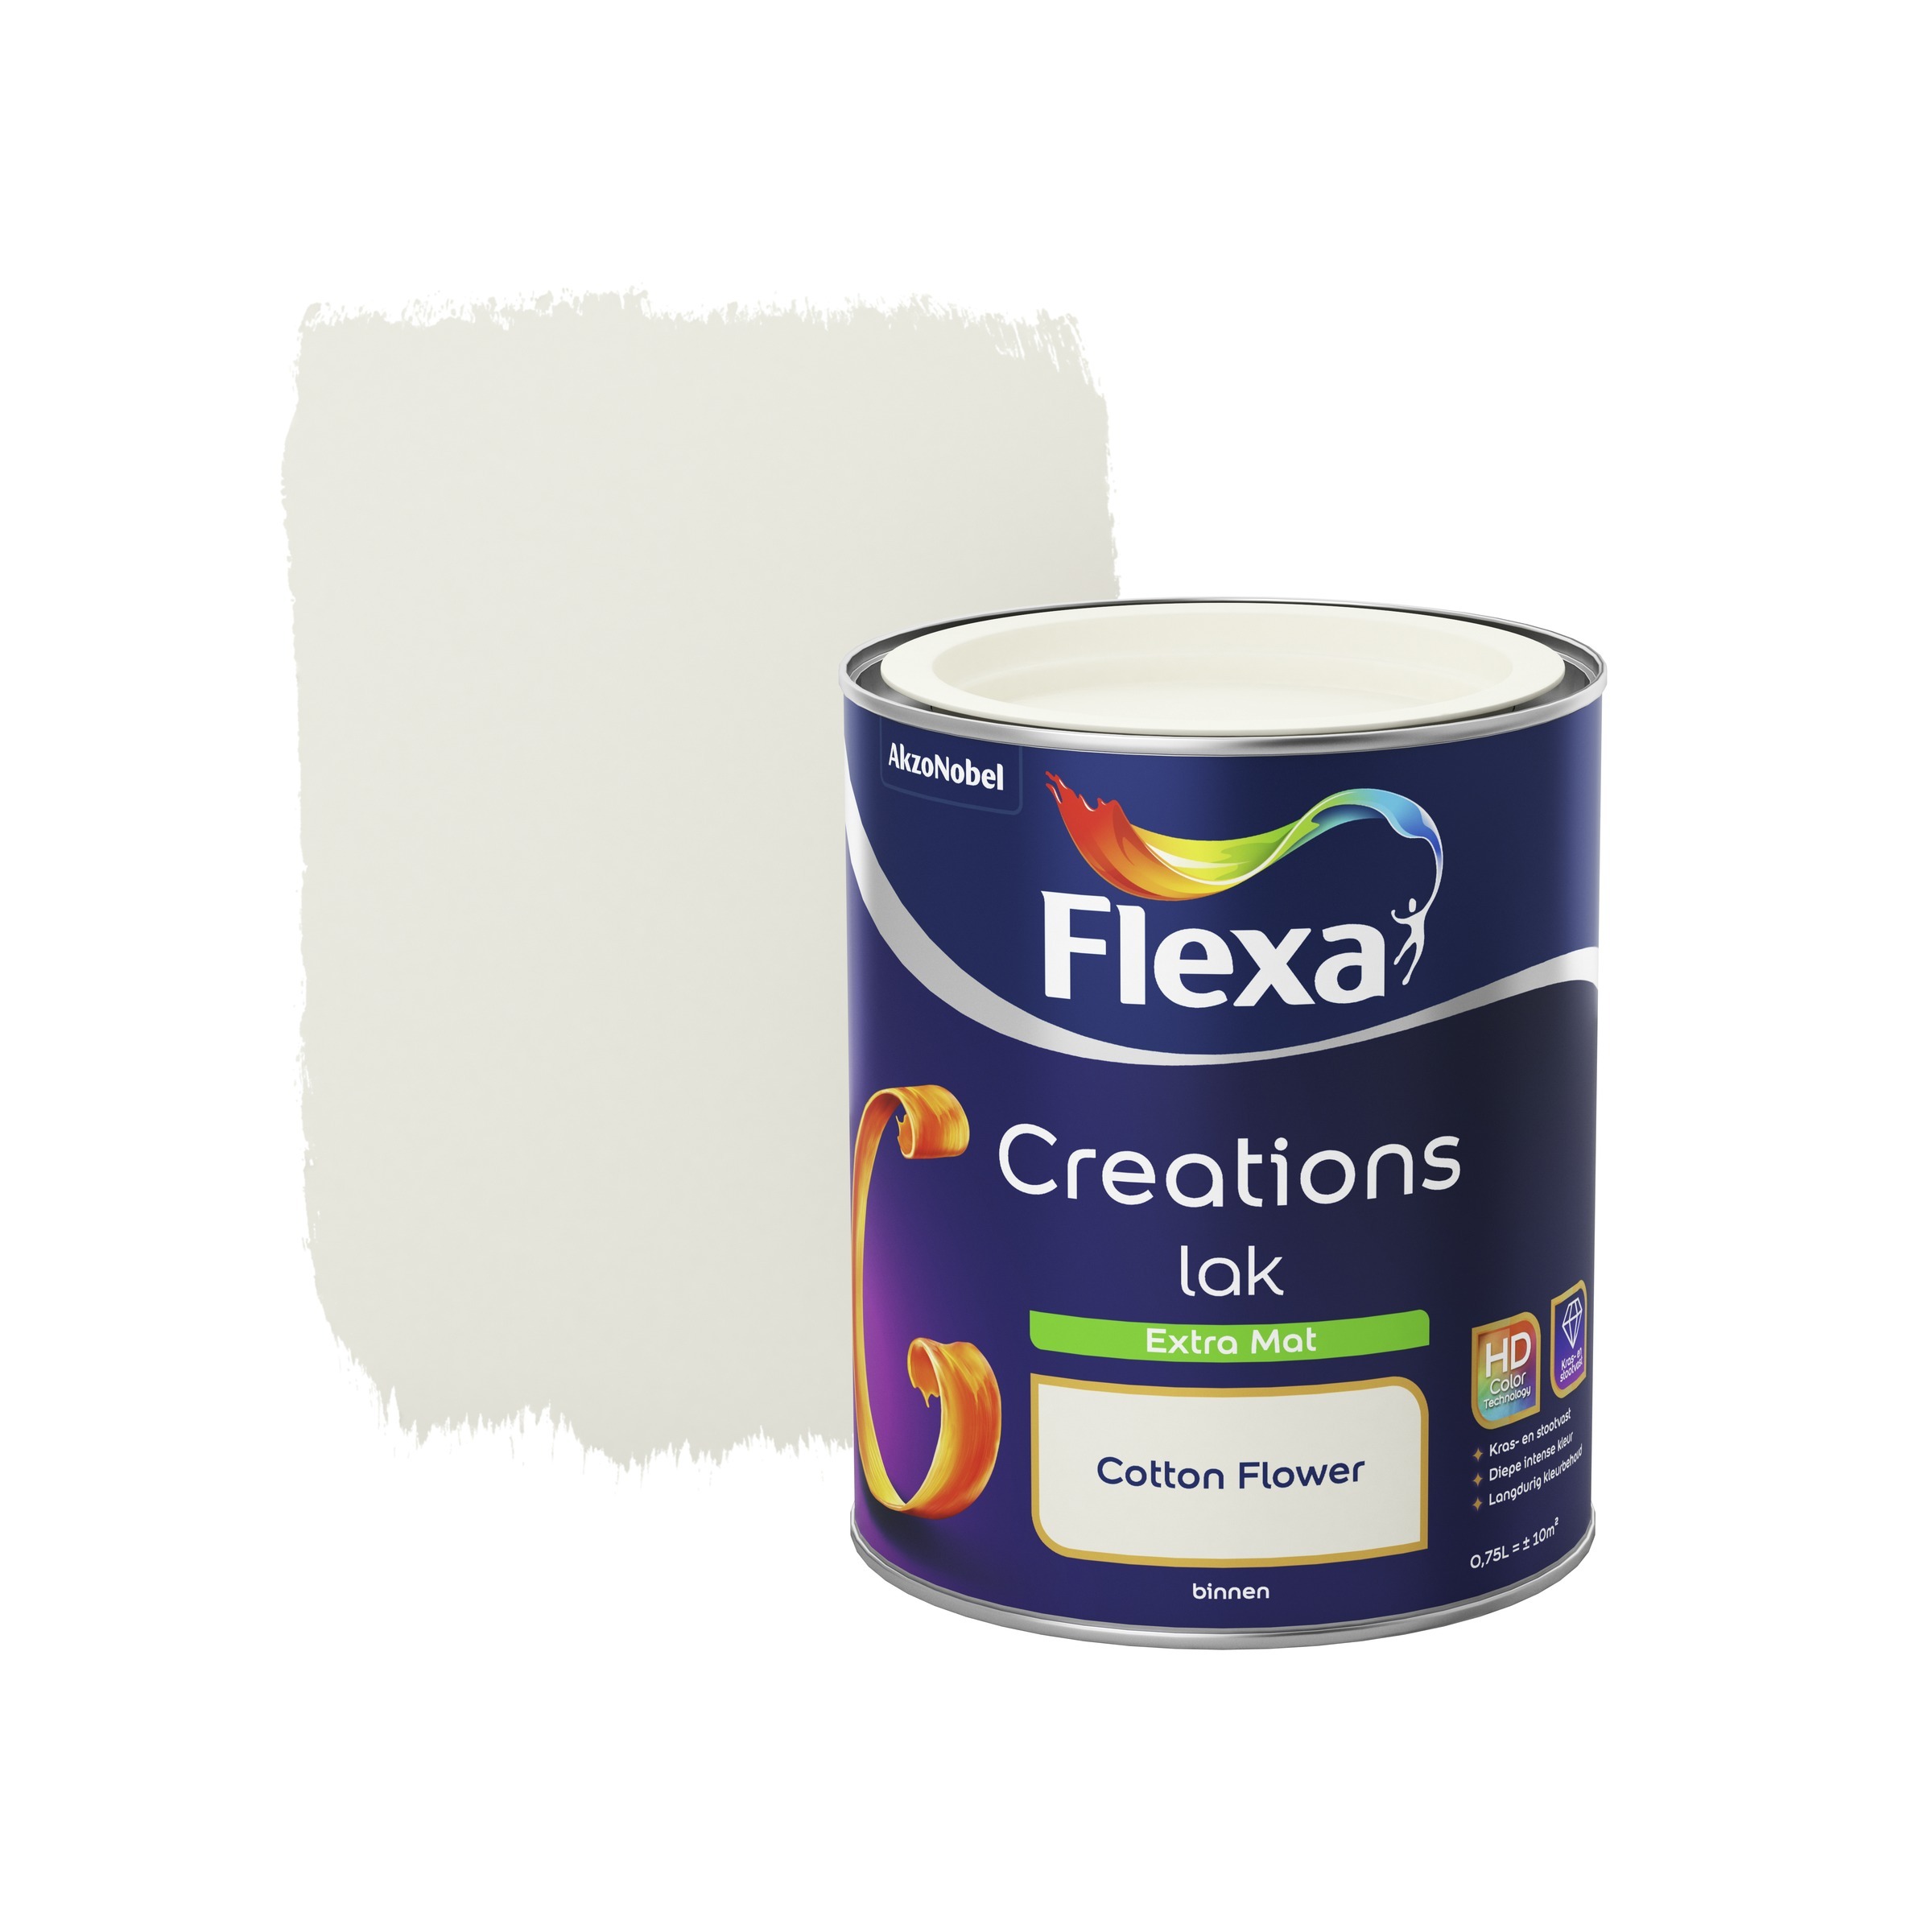 FLEXA Creations binnenlak cotton flower extra mat 750 ml